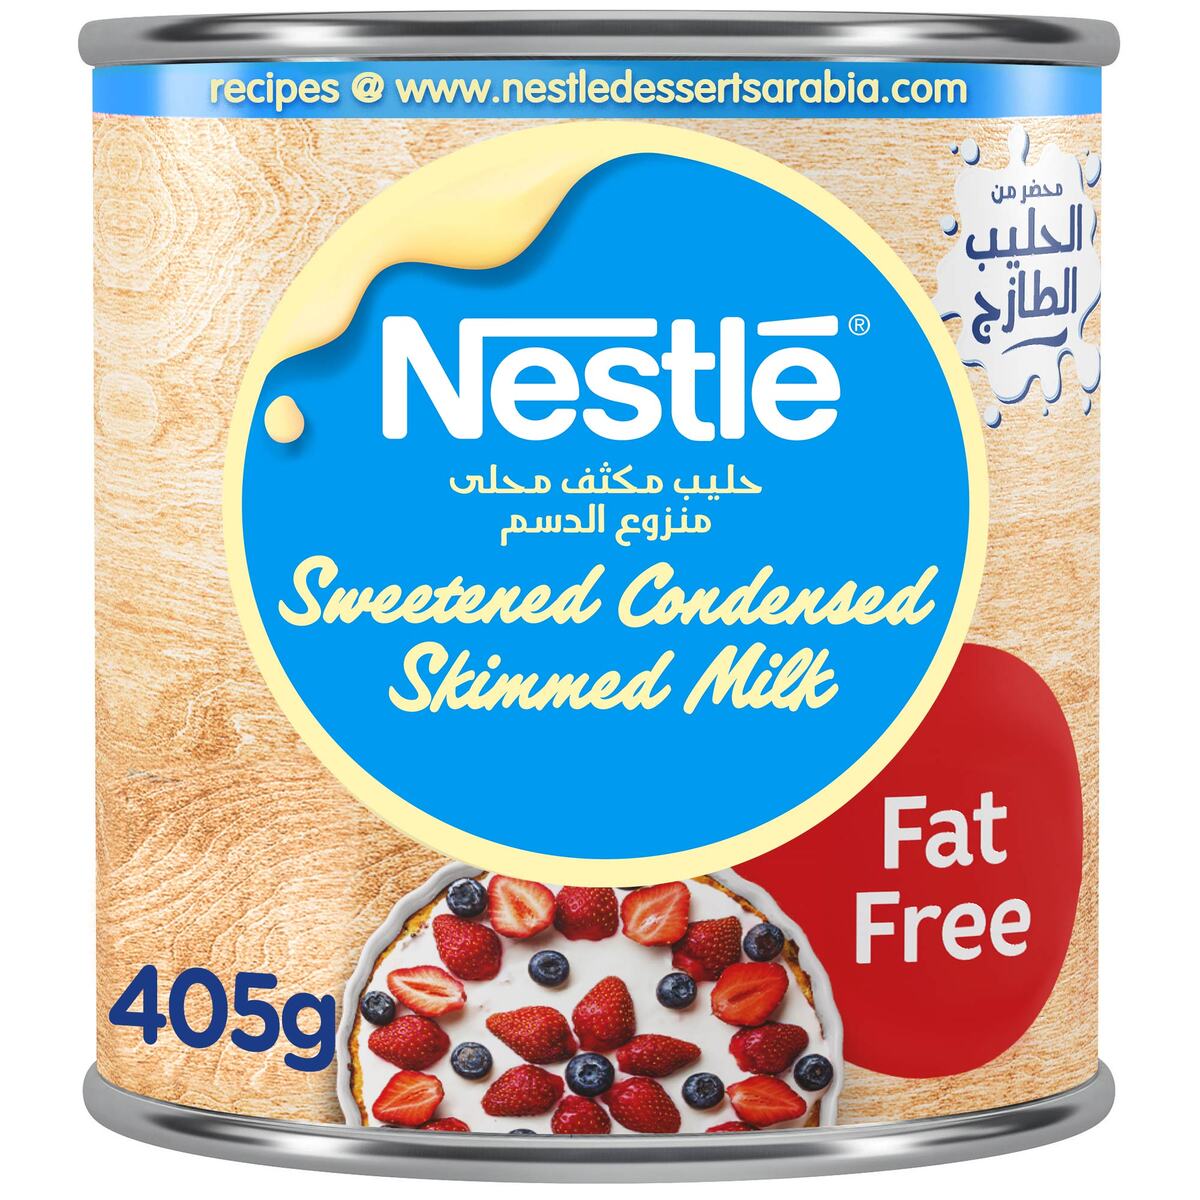 Buy Nestle Sweetened Condensed Milk Fat Free 405 g Online at Best Price | Condnsd Sweetnd Milk | Lulu UAE in Saudi Arabia